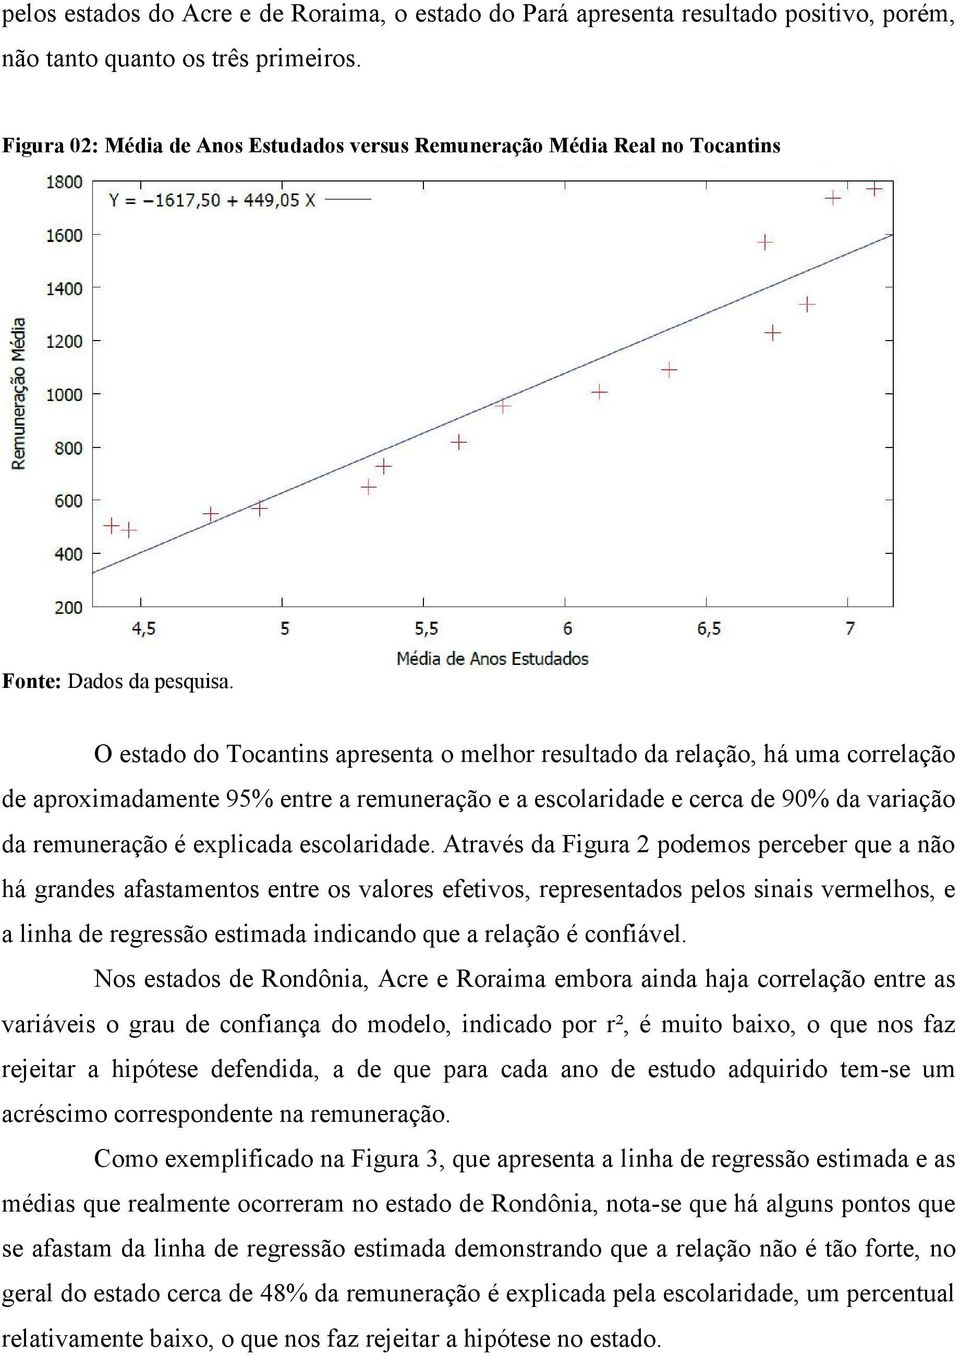 O estado do Tocantins apresenta o melhor resultado da relação, há uma correlação de aproximadamente 95% entre a remuneração e a escolaridade e cerca de 90% da variação da remuneração é explicada